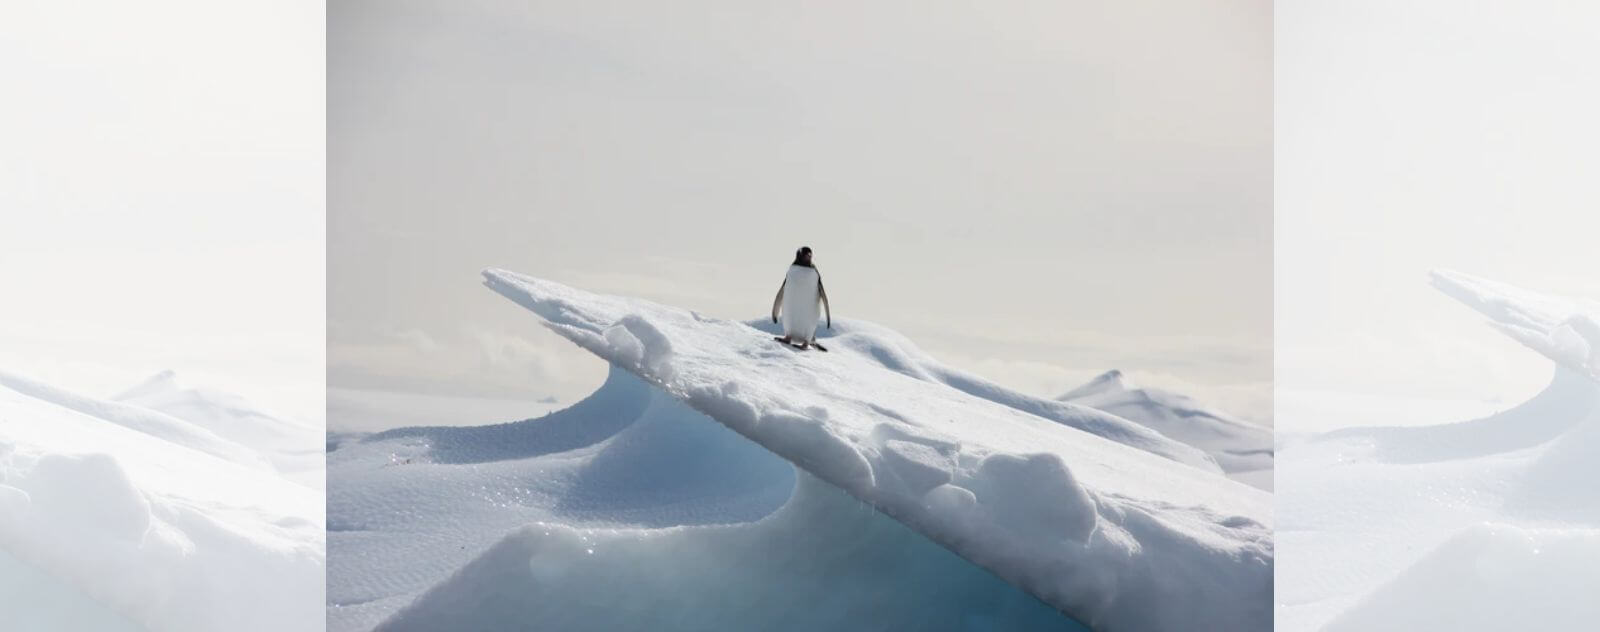 Manchot Debout en Haut d'un Pic de Glace sur la Neige et la Banquise en Antarctique